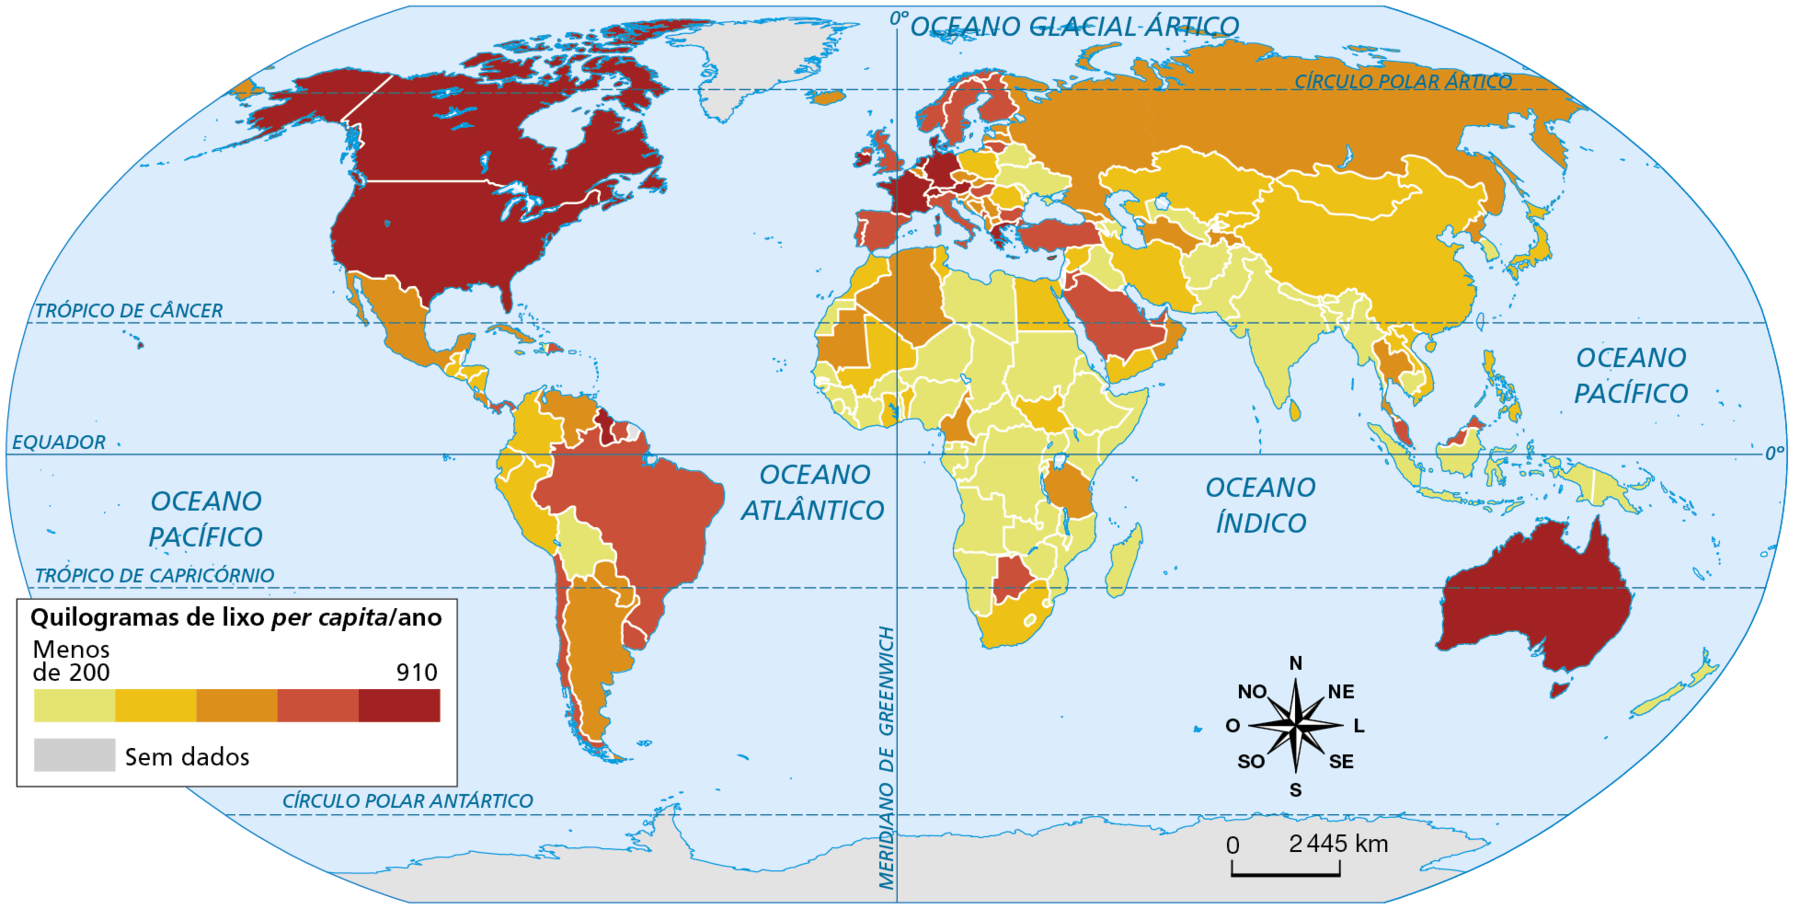 Mapa. Planisfério: produção de lixo, 2016. Planisfério mostrando o volume de lixo per capita gerado pelos países durante o ano. O volume de lixo, que vai de menos de 200 a 910 quilogramas per capita/ano é representado por cores, sendo que menos de 200 quilogramas é representado em amarelo e 910 quilogramas é representado em vermelho escuro; o intervalo entre esses valores é representado por tons de laranja e vermelho em gradação crescente de tonalidades, indicando aumento na geração de lixo (amarelo, laranja claro, laranja, vermelho claro, vermelho escuro). Países representados na cor amarela (menos de 200 quilogramas de lixo per capita/ano): Bolívia, Haiti, Ucrânia, Belarus, Moldávia, Iraque, Azerbaijão, Armênia, Turcomenistão, Afeganistão, Paquistão, Índia, Nepal, Butão, Bangladesh, Mianmar, Camboja, Indonésia, Coreia do Sul, Papua Nova Guiné, Saara Ocidental, Senegal, Gâmbia, Guiné-Bissau, Guiné, Serra Leoa, Libéria, Costa do Marfim, Burkina Fasso, Níger, Líbia, Chade, Nigéria, Sudão, Etiópia, Somália, Quênia, República Centro-Africana, Congo, Gabão, Guiné Equatorial, Angola, Moçambique, Namíbia, República Democrática do Congo, Zimbábue, Malauí, Zâmbia, Ruanda, Uganda, Nova Zelândia. Países representados na cor laranja claro: Colômbia, Peru, Equador, Guatemala, El Salvador, Honduras, Nicarágua, Tunísia, Marrocos, Egito, Mali, Gana, Benin, Sudão do Sul, África do Sul, Romênia, Polônia, Mongólia, Cazaquistão, China, Irã, Síria, Iêmen, Japão, Vietnã, Laos, Sri Lanka, Filipinas. Países representados na cor laranja: Venezuela, Argentina, Paraguai, México, Cuba, Argélia, Mauritânia, Camarões, Tanzânia, Islândia, Rússia, Bélgica, República Tcheca, Eslovênia, Croácia, Bósnia-Herzegovina, Sérvia, Macedônia do Norte, Albânia, Estônia, Letônia, Omã, Turcomenistão, Tadjiquistão, Coreia do Norte, Tailândia. Países representados na cor vermelho claro: Brasil, Chile, Uruguai, Suriname, Panamá, República Dominicana, Portugal, Espanha, Itália, Reino Unido, Hungria, Bulgária, Suécia, Finlândia, Noruega, Lituânia, Turquia, Arábia Saudita, Malásia, Botsuana. Países representados em vermelho escuro (910 quilogramas de lixo per capita/ano): Estados Unidos, Canadá, França, Alemanha, Austrália, Irlanda, Guiana, Grécia, Suíça, Áustria, Países Baixos, Dinamarca. Sem dados: Guiana Francesa, Groenlândia e Antártida. Na parte inferior direita, a rosa dos ventos; abaixo, a escala de 0 a 2.445 quilômetros.